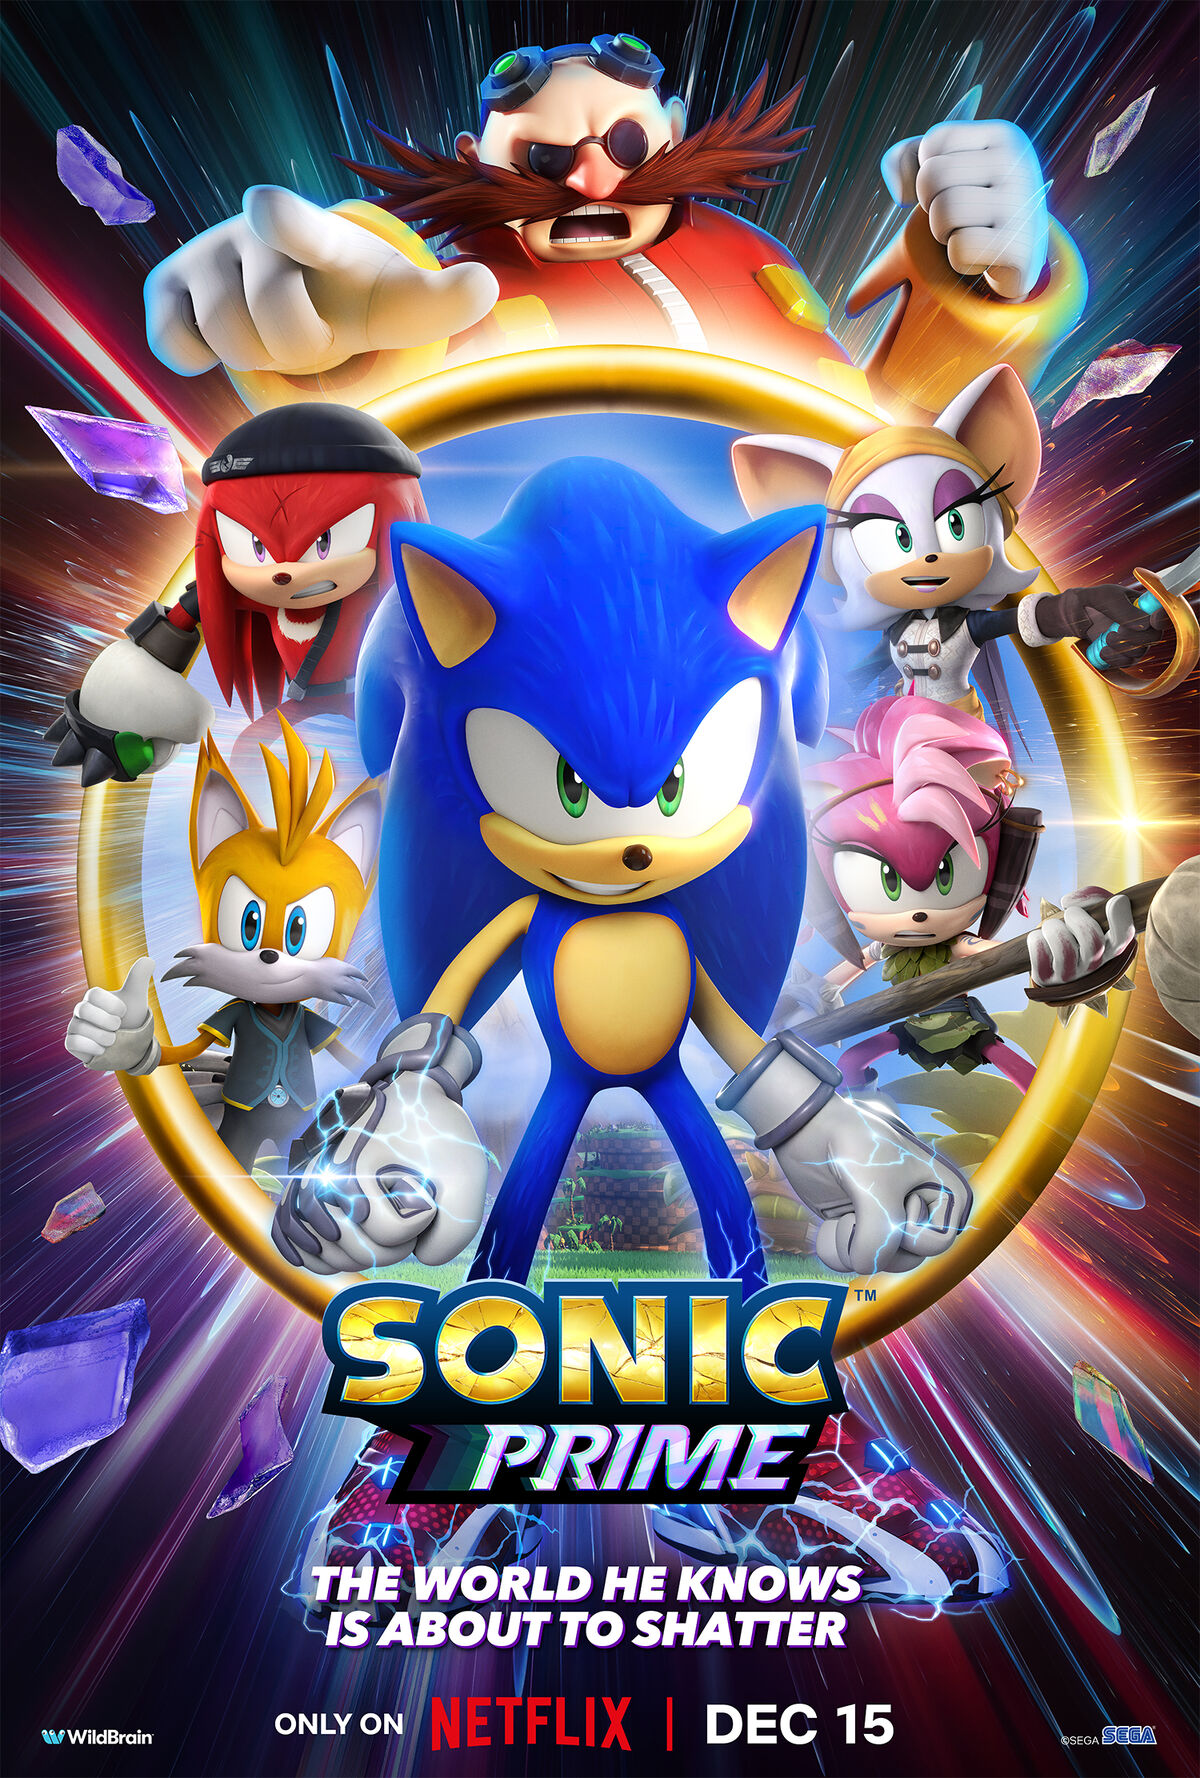 Sonic The Hedgehog: série clássica estreia na  Prime Video